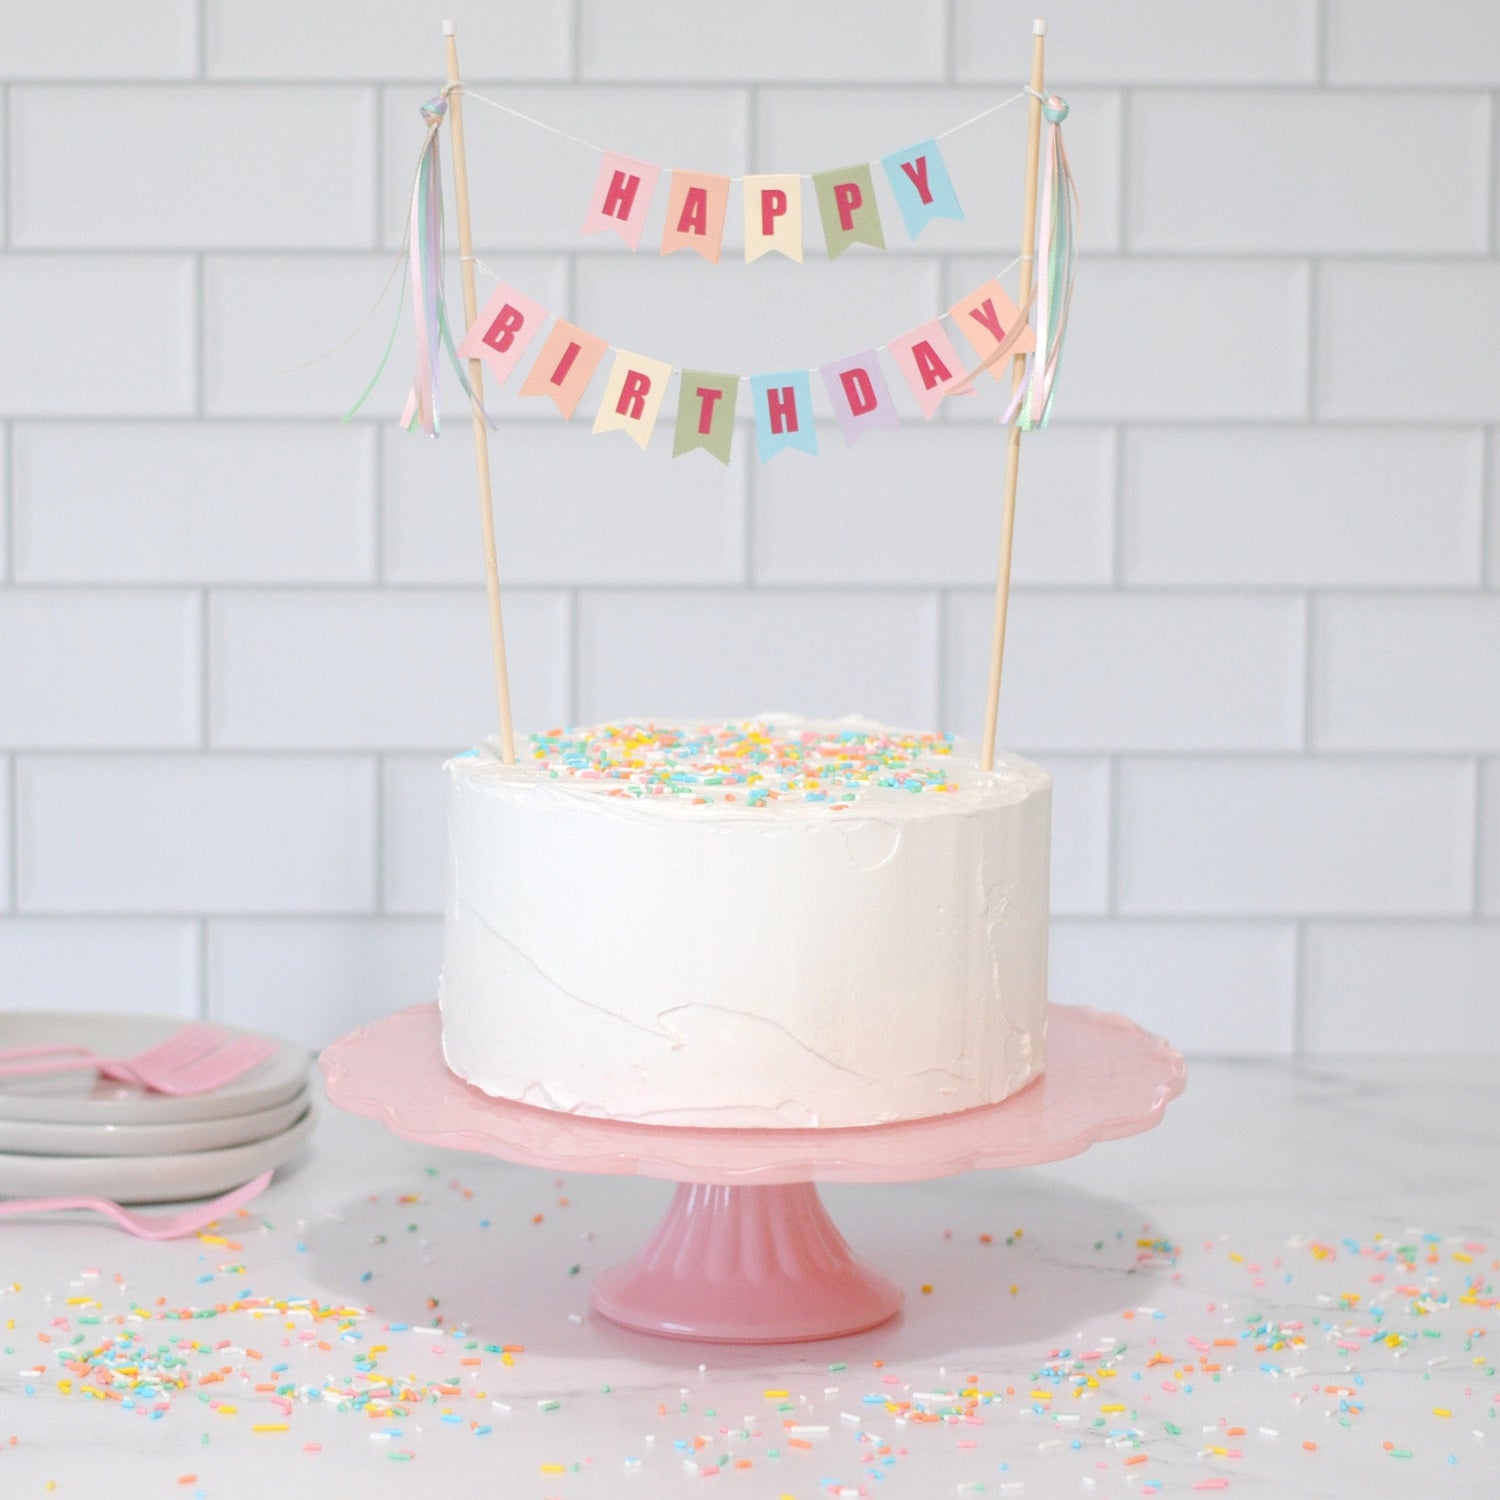 HBD Cake For Wife - Cake'O'Clocks